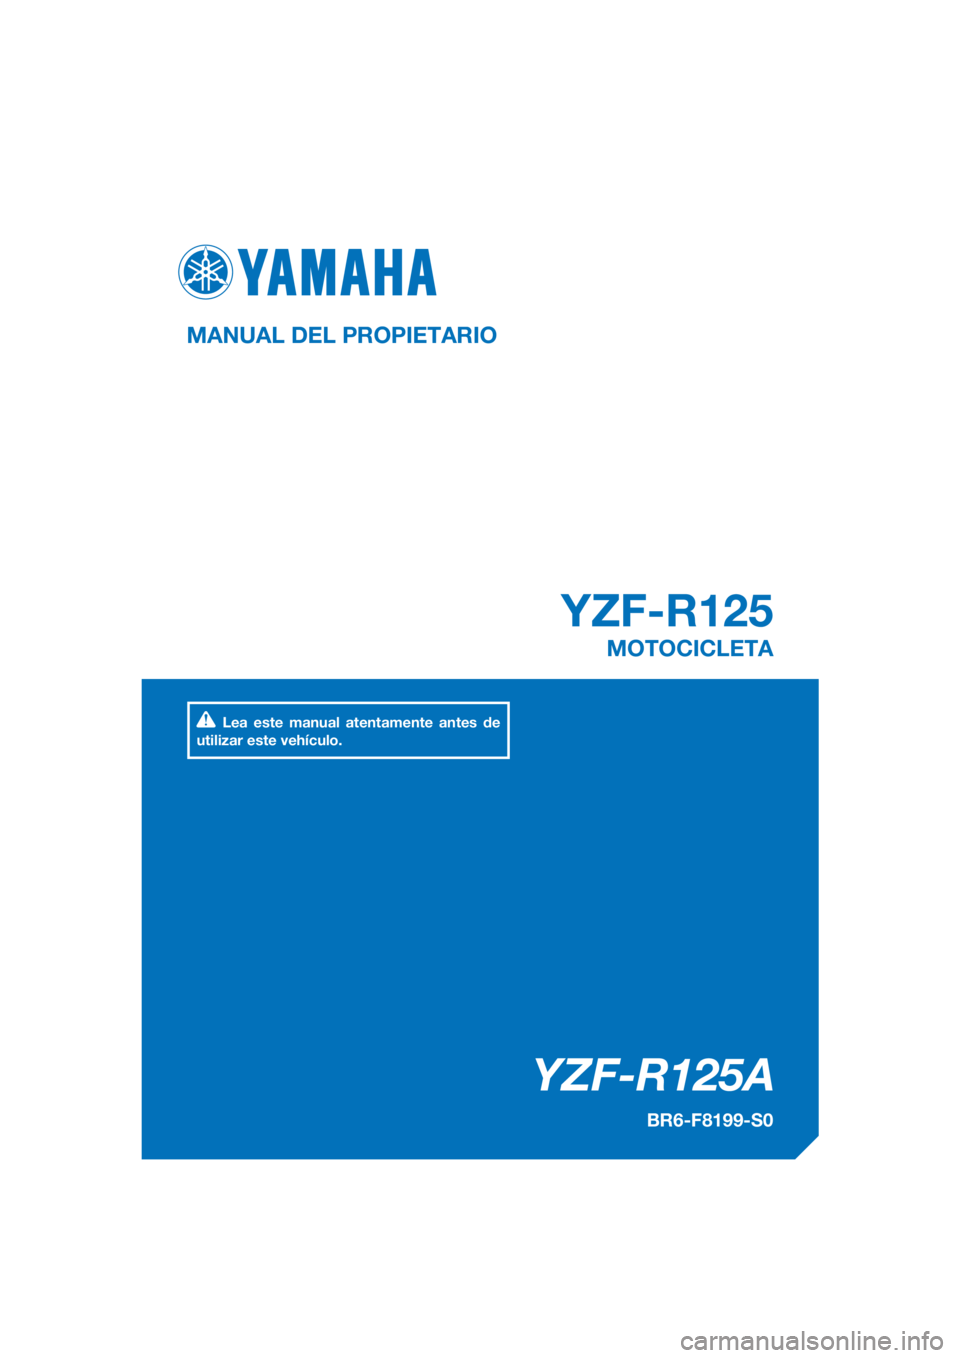 YAMAHA YZF-R125 2018  Manuale de Empleo (in Spanish) PANTONE285C
YZF-R125A
YZF-R125
MANUAL DEL PROPIETARIO
BR6-F8199-S0
MOTOCICLETA
Lea este manual atentamente antes de 
utilizar este vehículo.
[Spanish  (S)] 